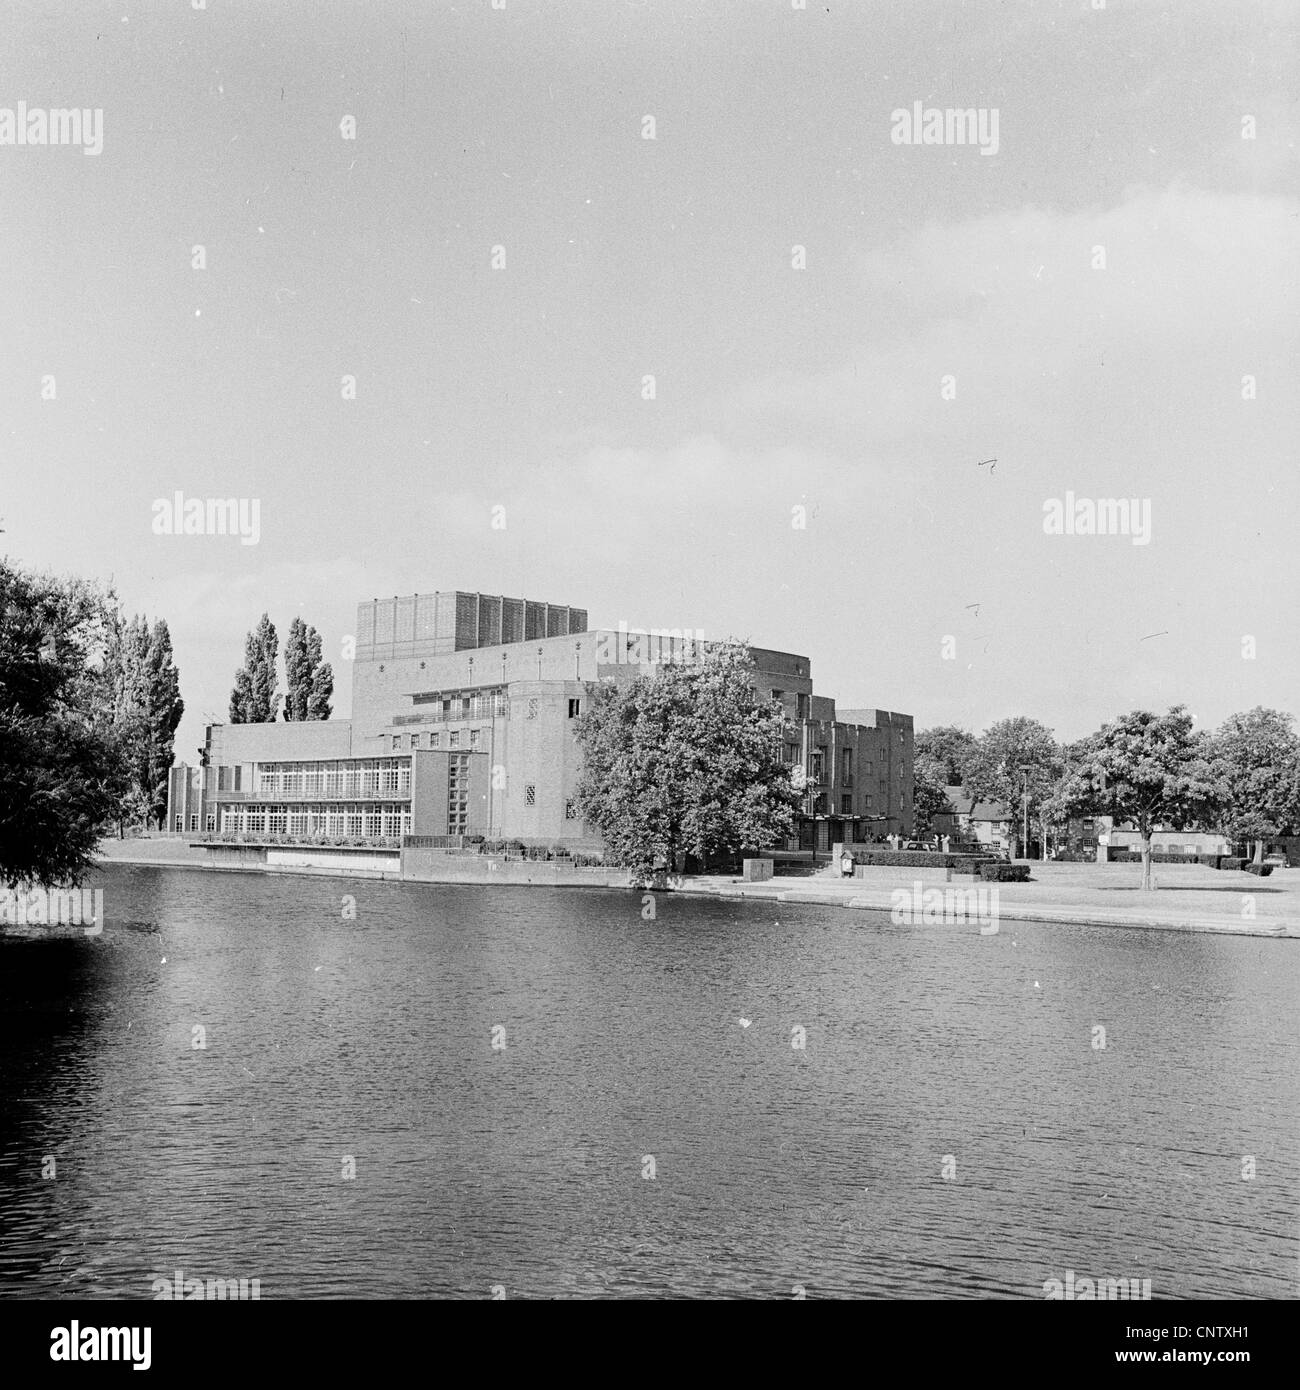 Historisches Bild from1960s Shakespeare-Theater am Fluss Avon, den berühmten elisabethanischen englische Dramatiker feiern. Stockfoto